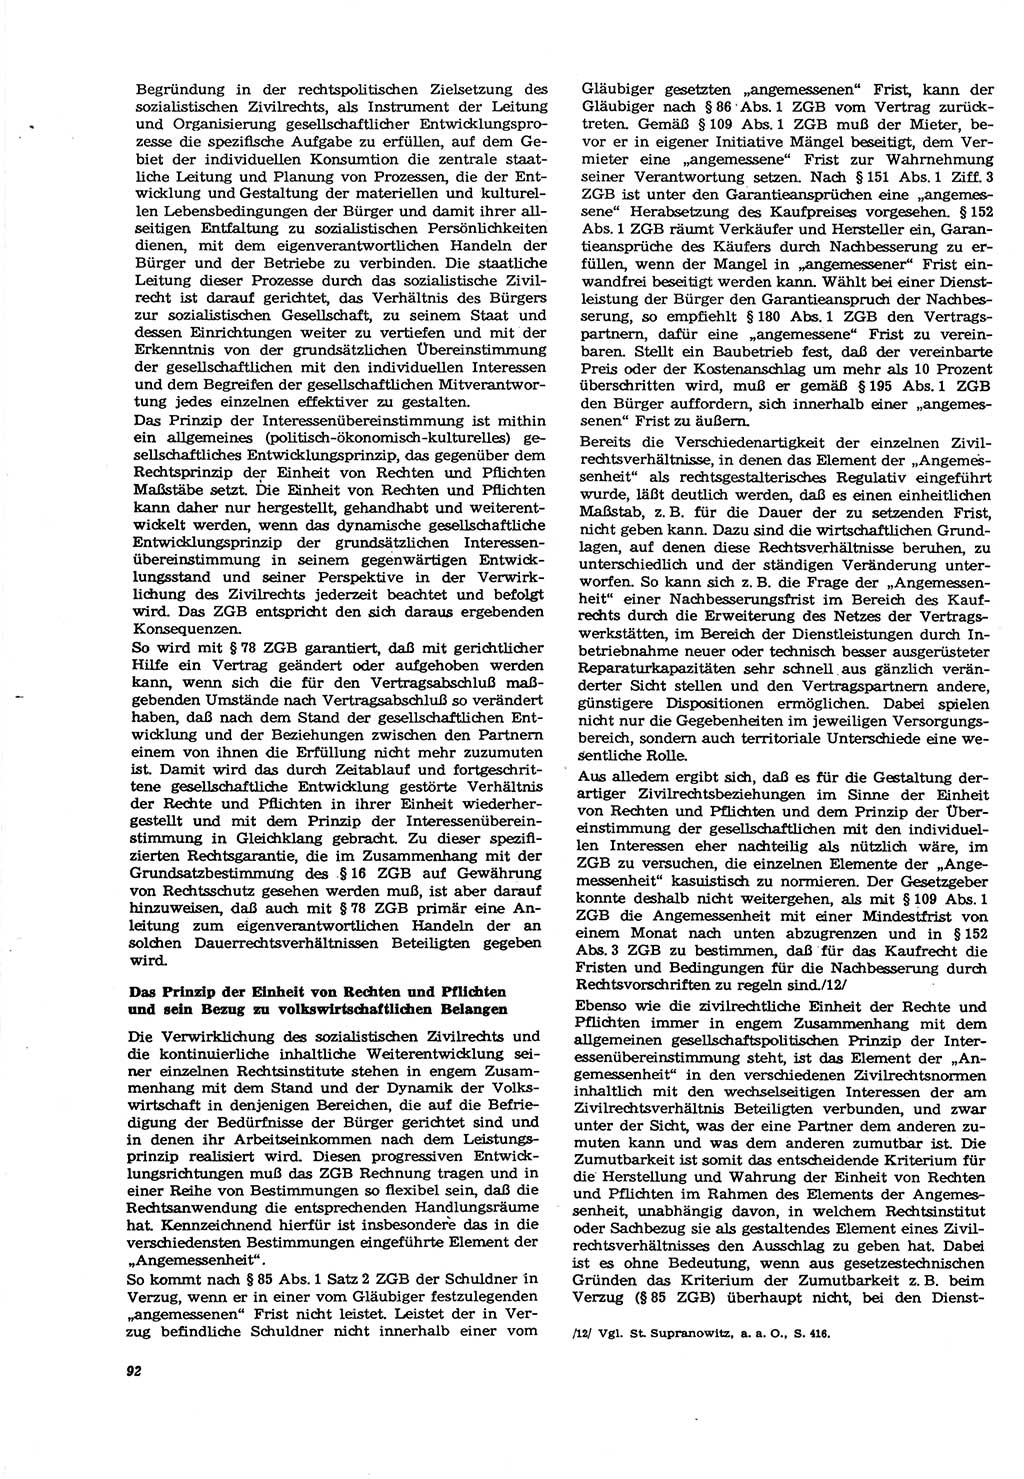 Neue Justiz (NJ), Zeitschrift für Recht und Rechtswissenschaft [Deutsche Demokratische Republik (DDR)], 30. Jahrgang 1976, Seite 92 (NJ DDR 1976, S. 92)